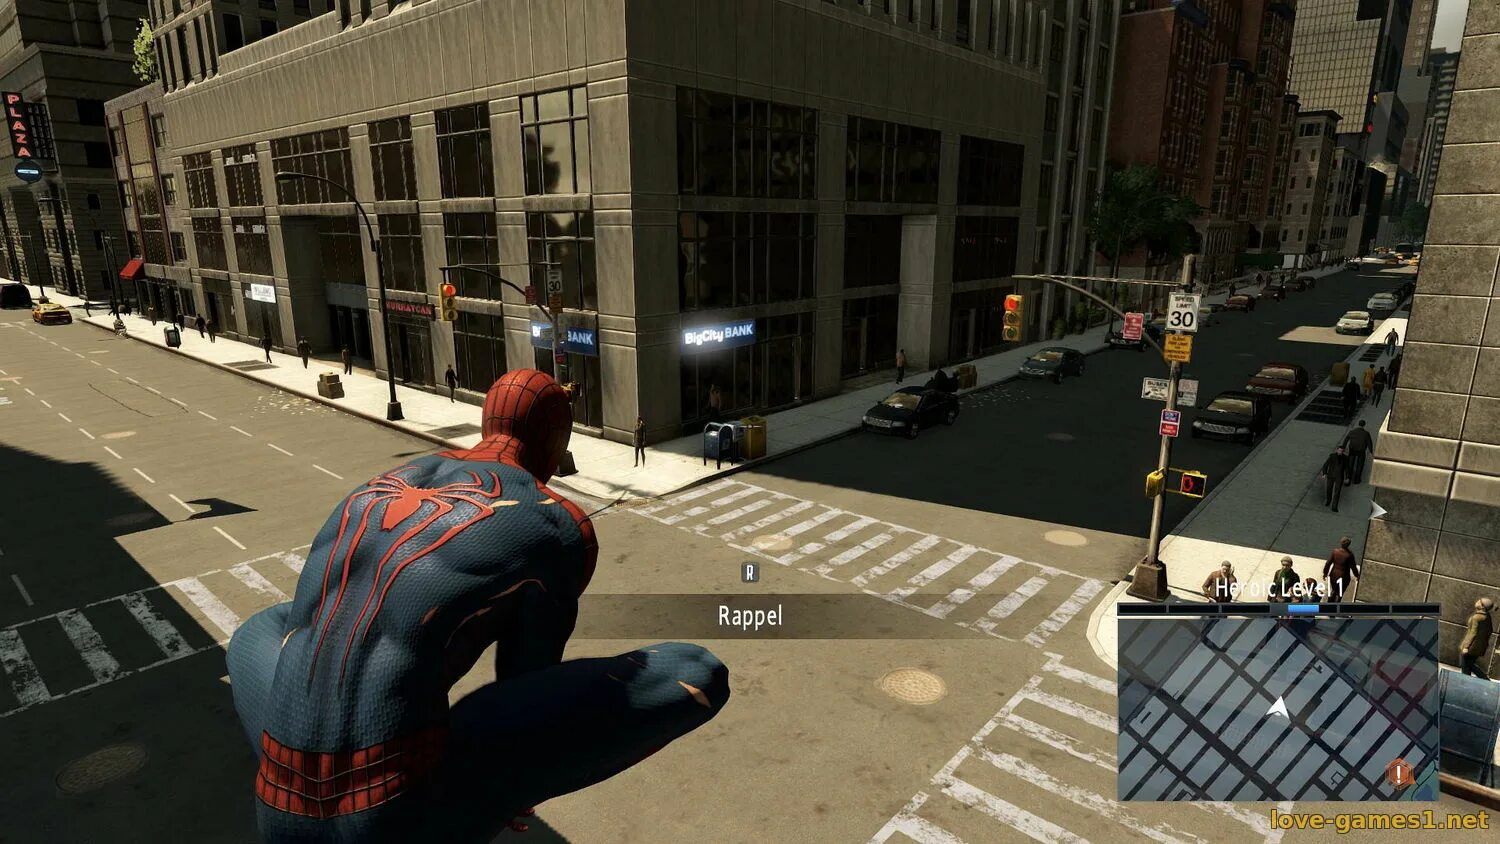 Бесплатная игра человек паук 2. Эмэйзинг Спайдер Мэн 2. The amazing Spider-man 2 (игра, 2014). Человек паук амазинг 2 игра. Эмэйзинг Спайдер Мэн игра.